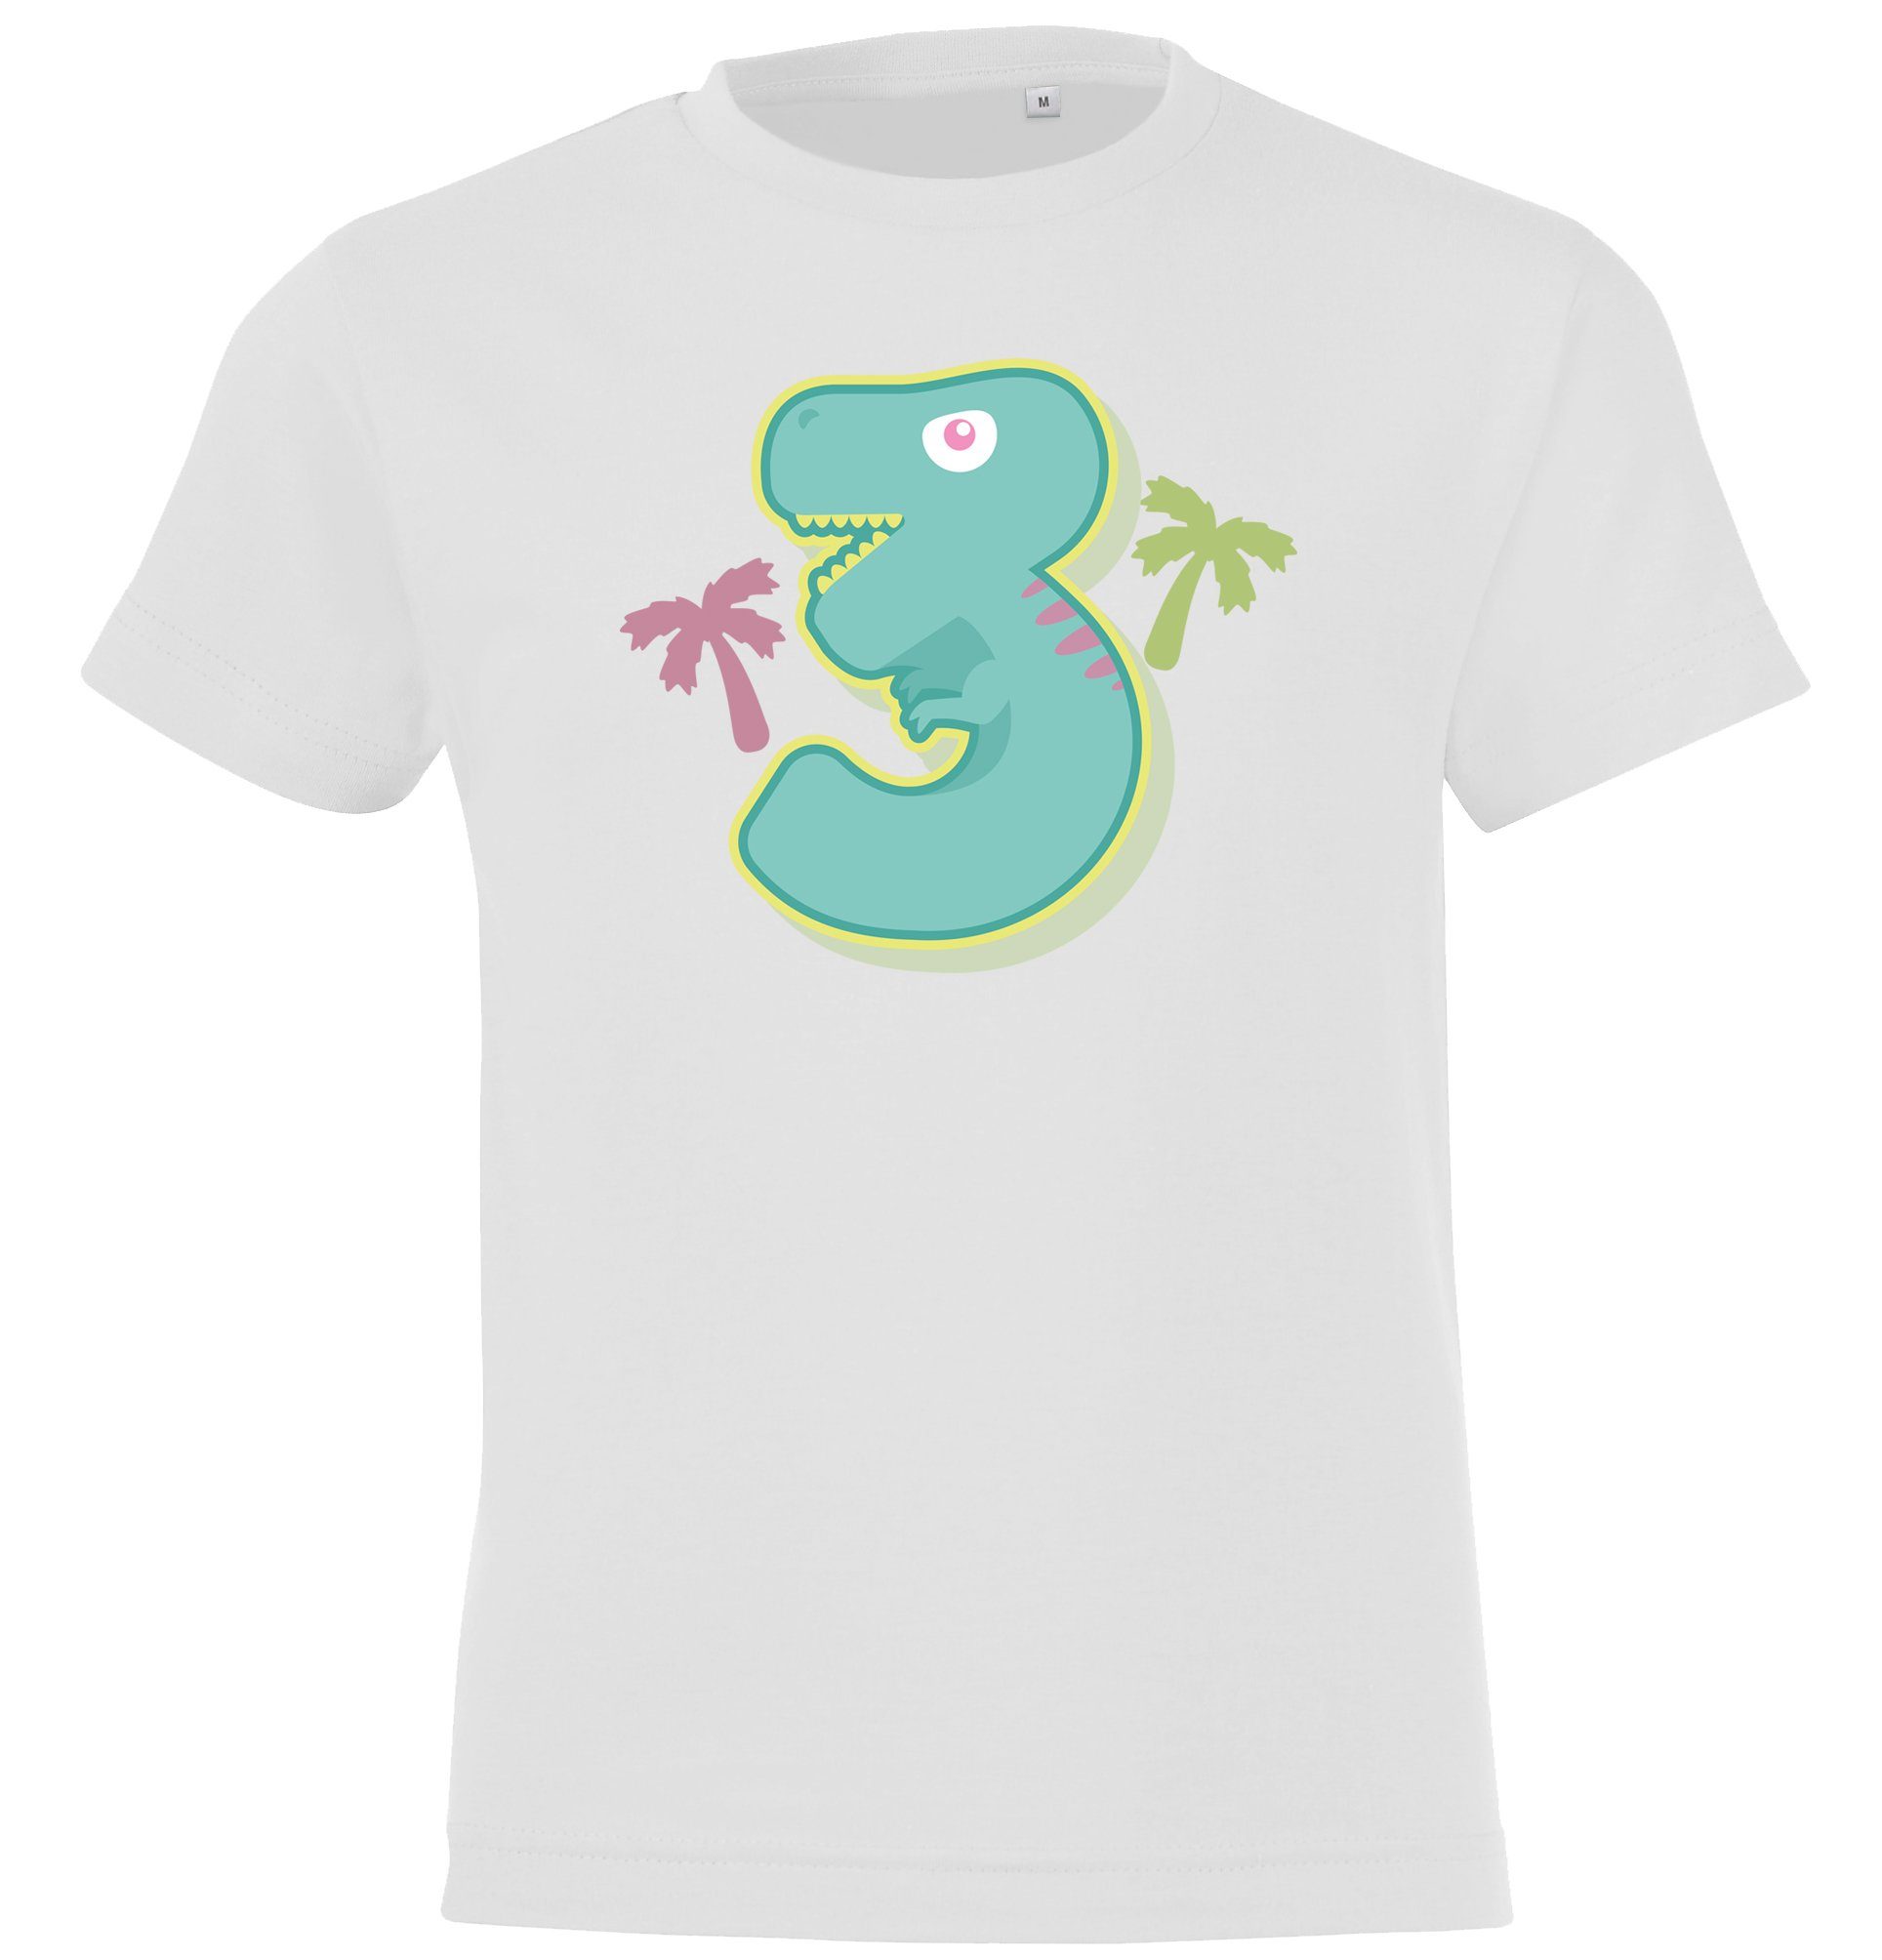 3 Jahre T-Shirt mit Designz Geburtstags Jungen lustigem T-Shirt für Alt Frontprint Youth Weiß